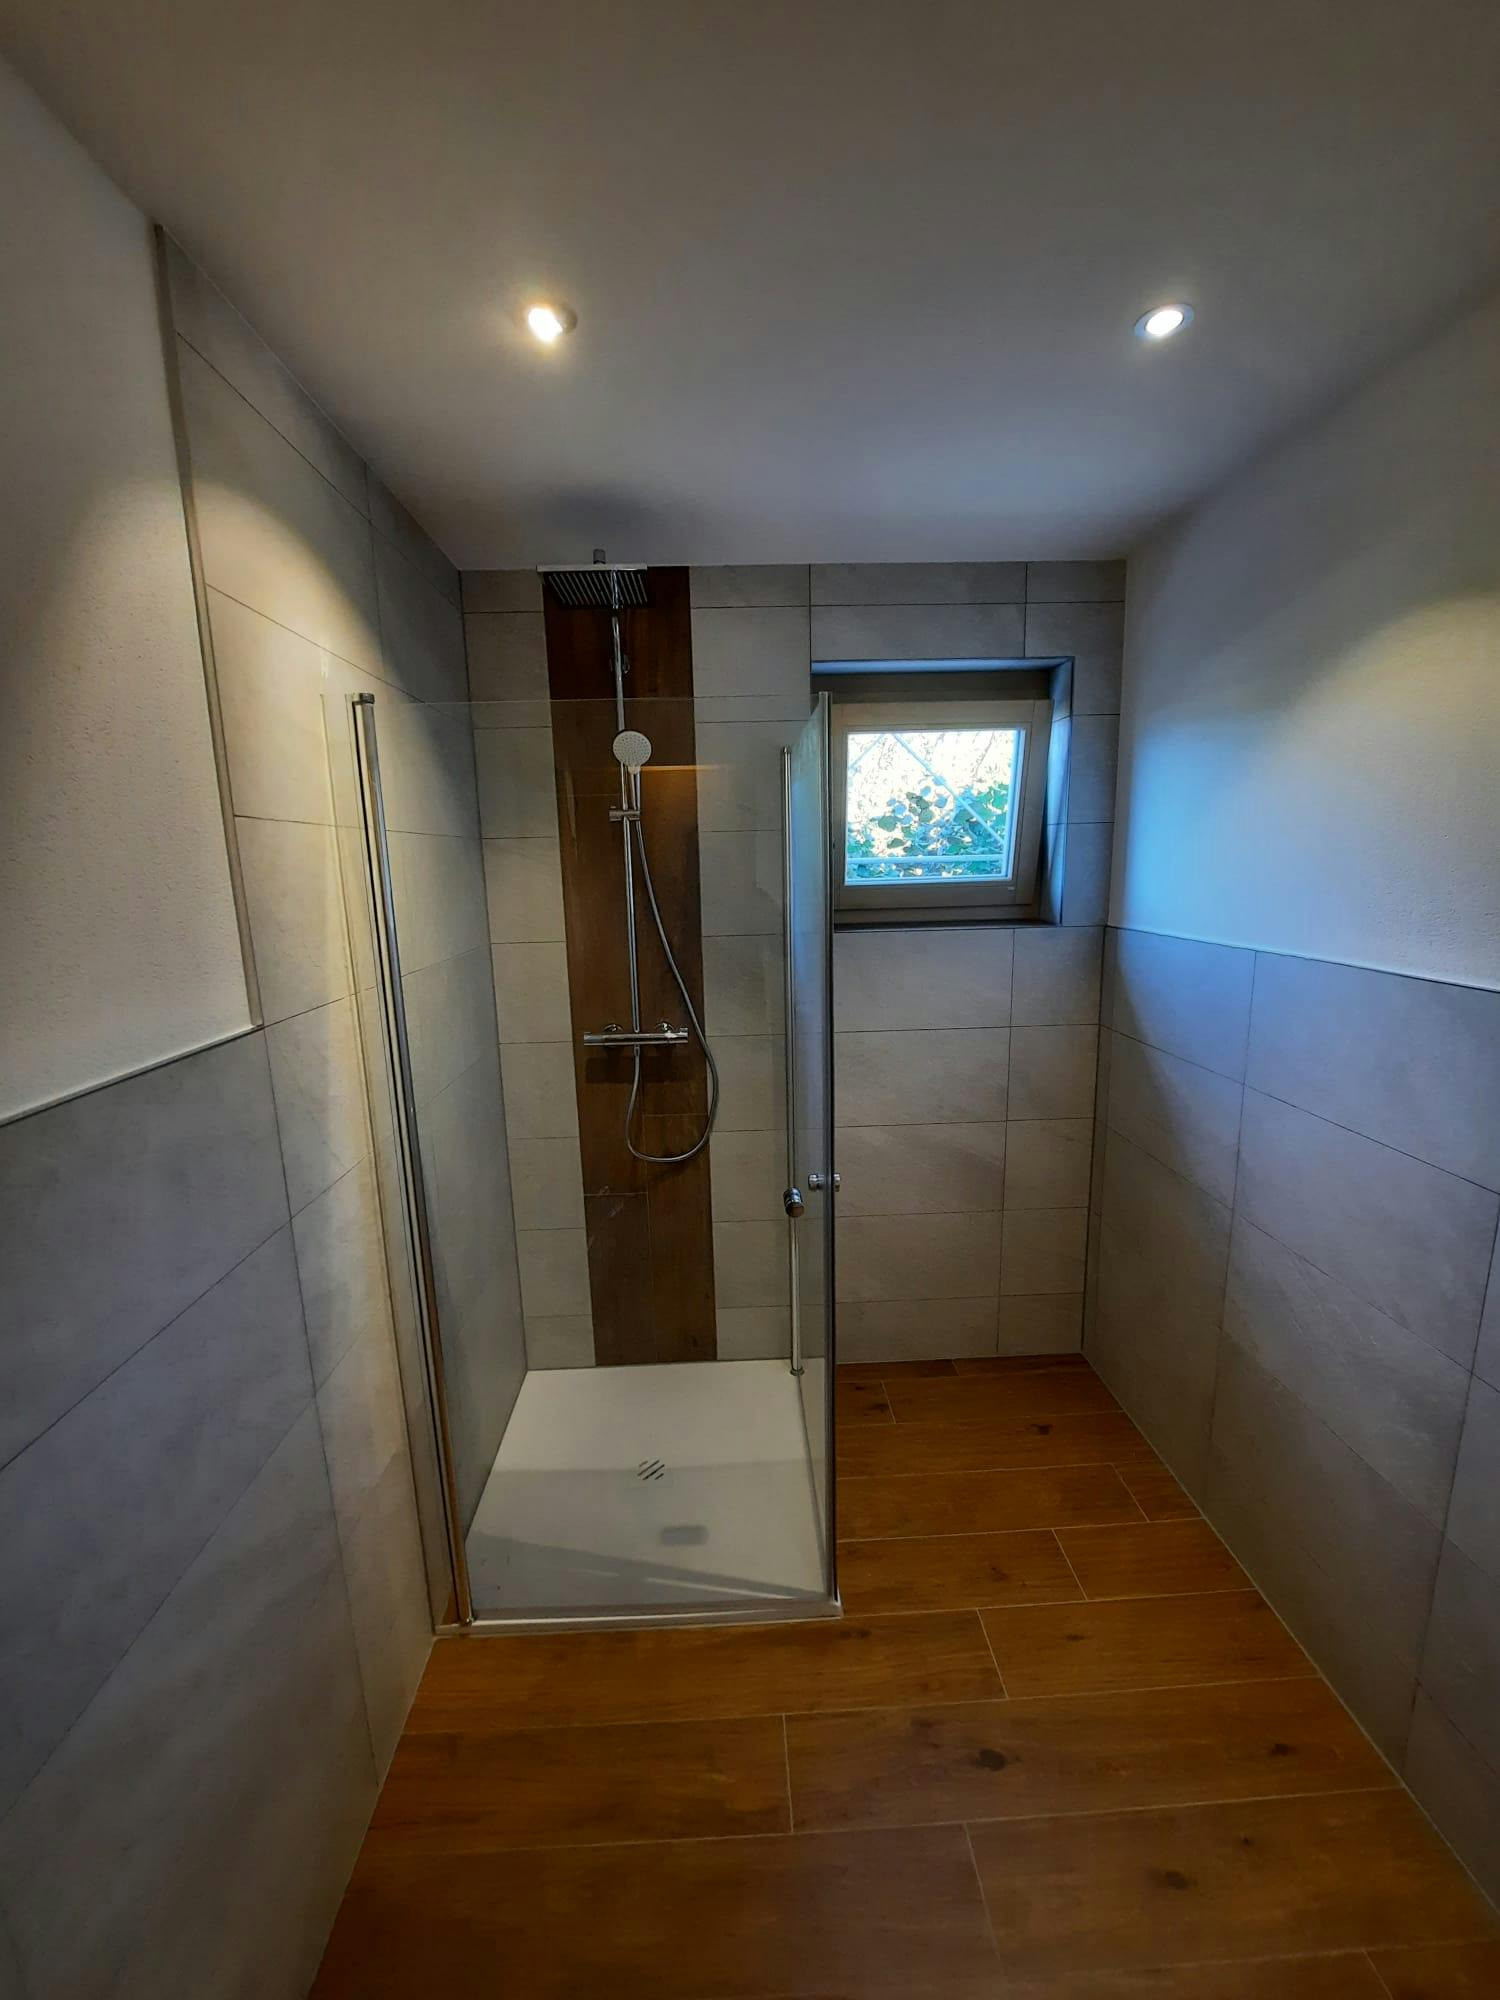 Modernes Badezimmer mit eleganter Duschkabine und hochwertigen Keramikfliesen